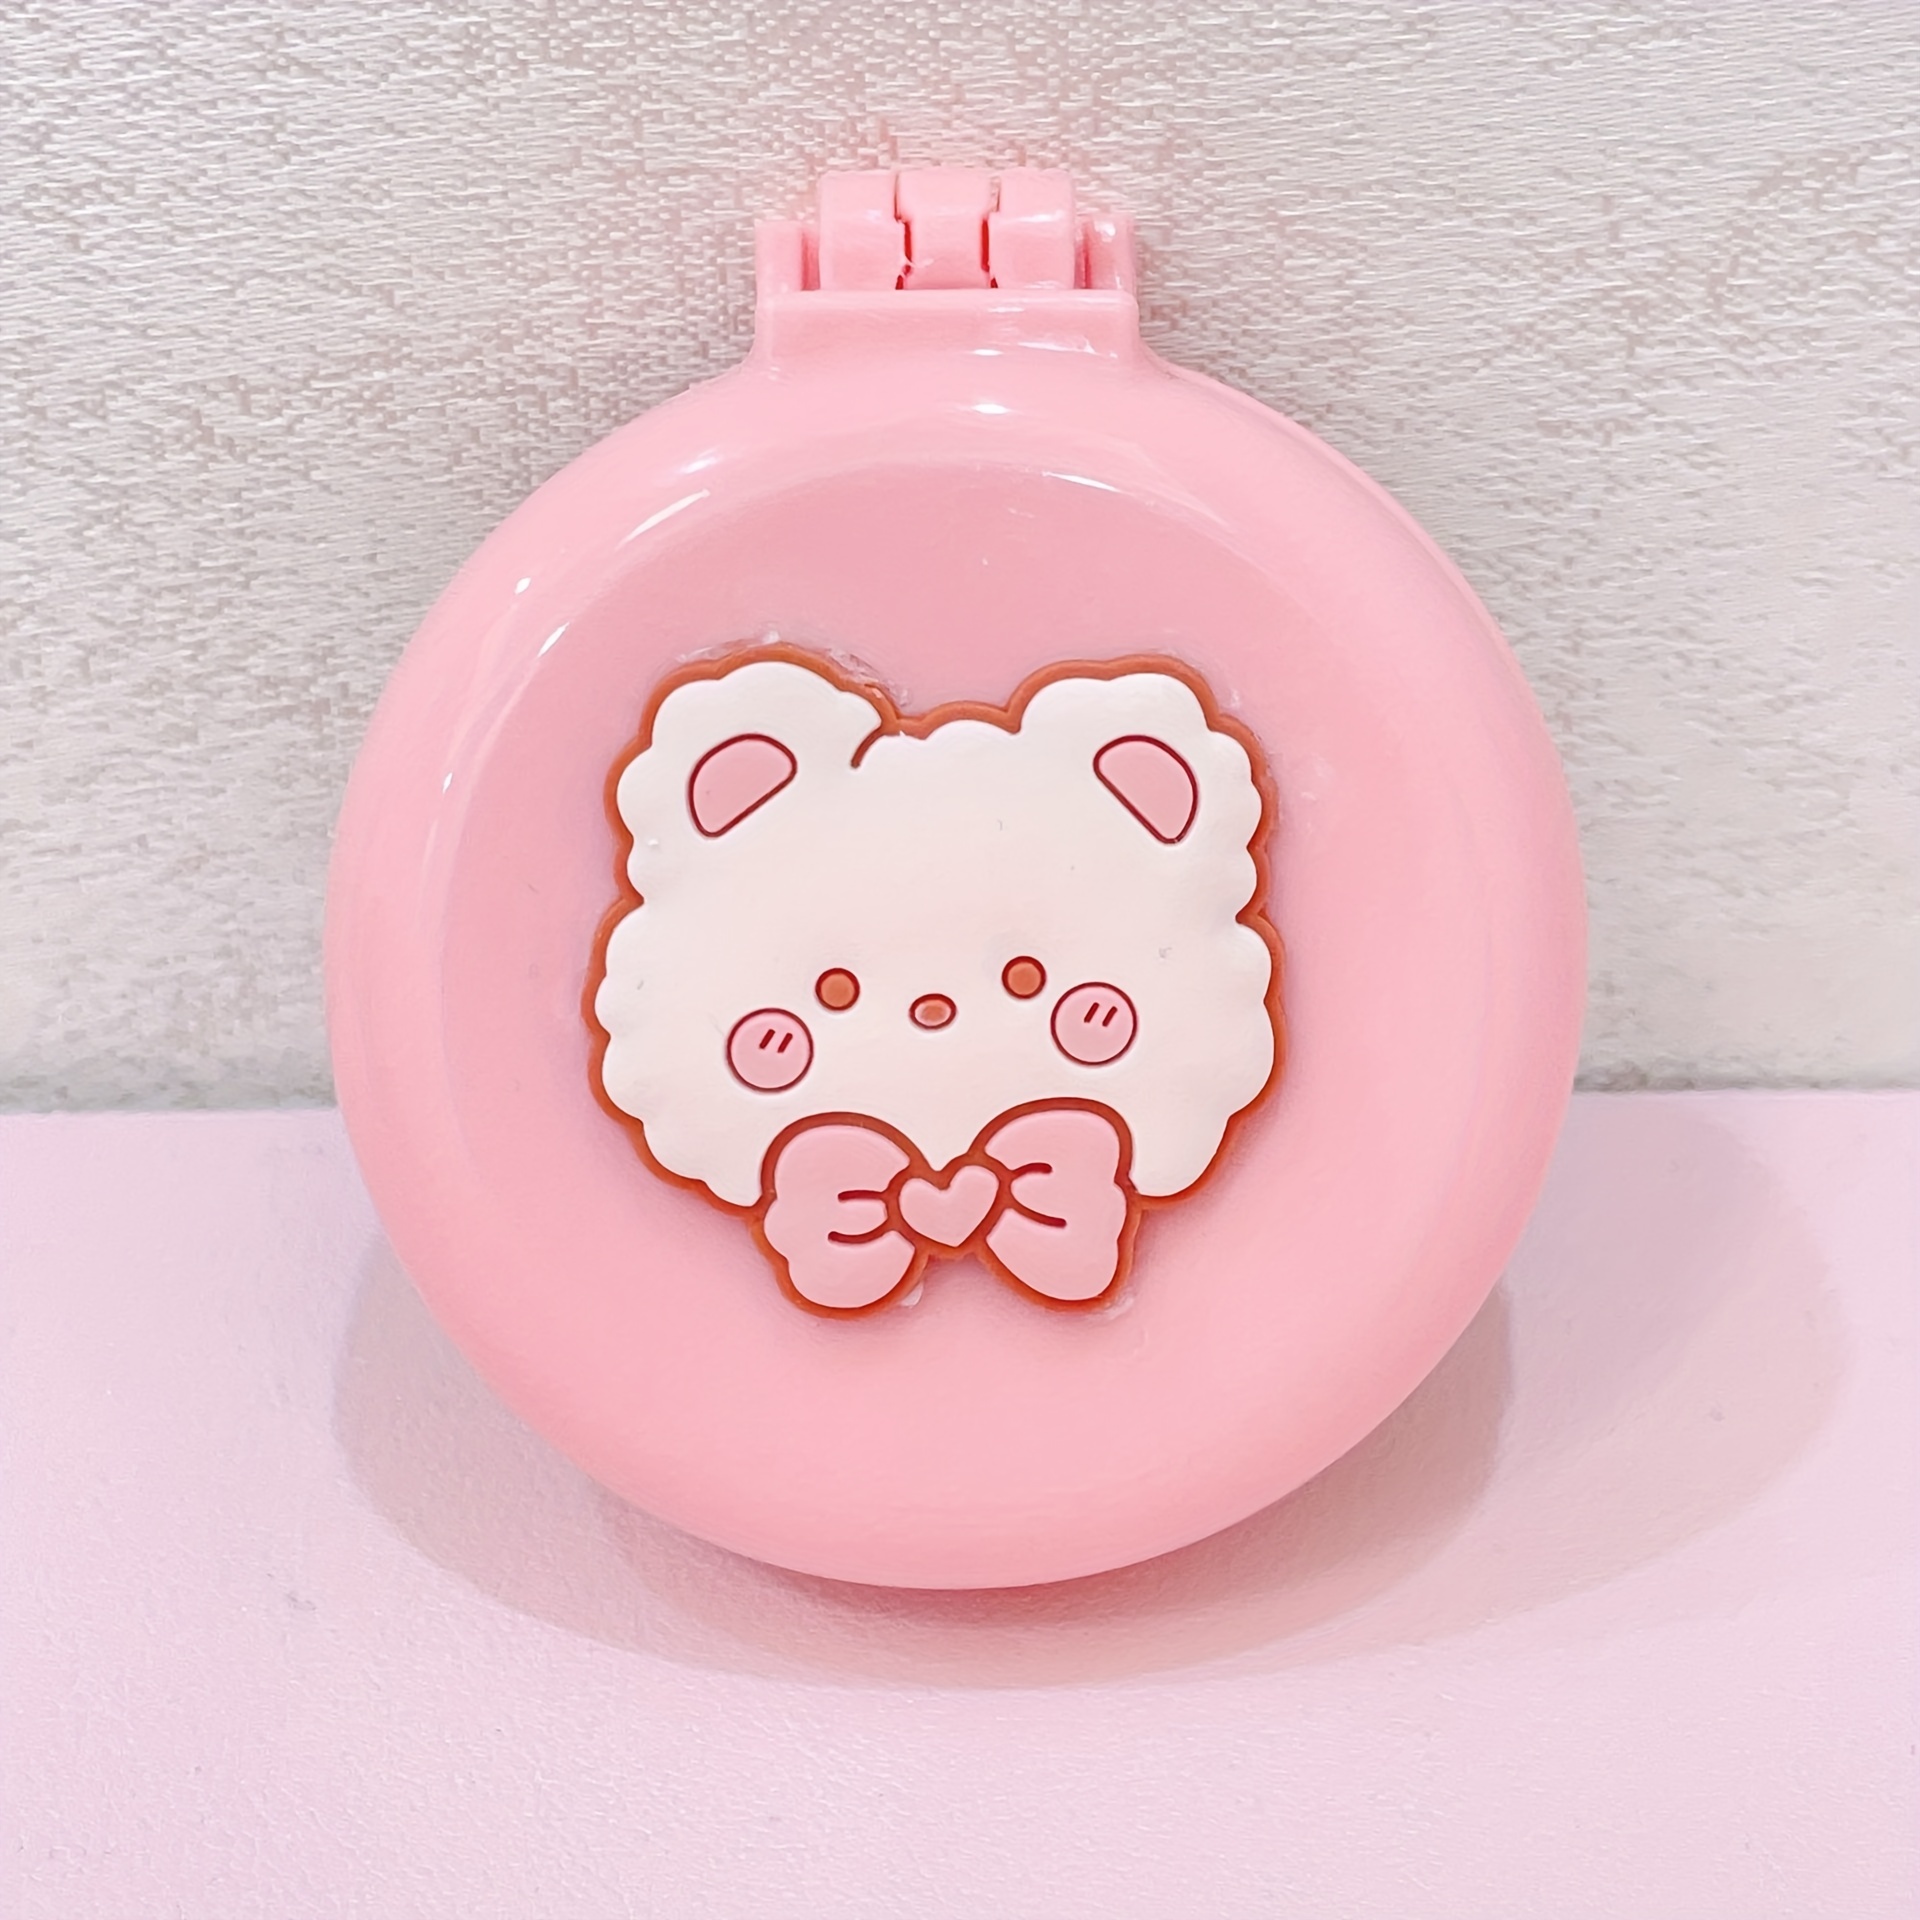 Brosse à cheveux pliable et miroir Hello Kitty - Pour les Kids